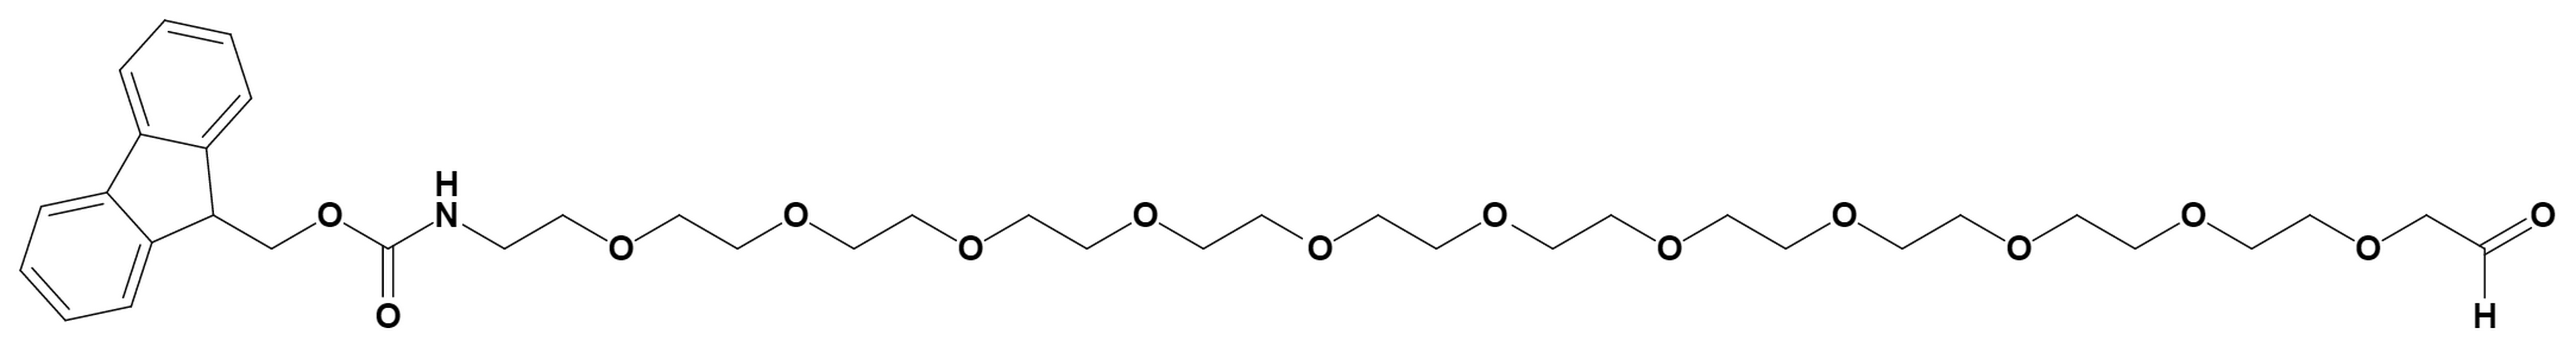 Fmoc PEG,Fmoc Amino PEG Reagent, Fmoc-NH Linkers | AxisPharm